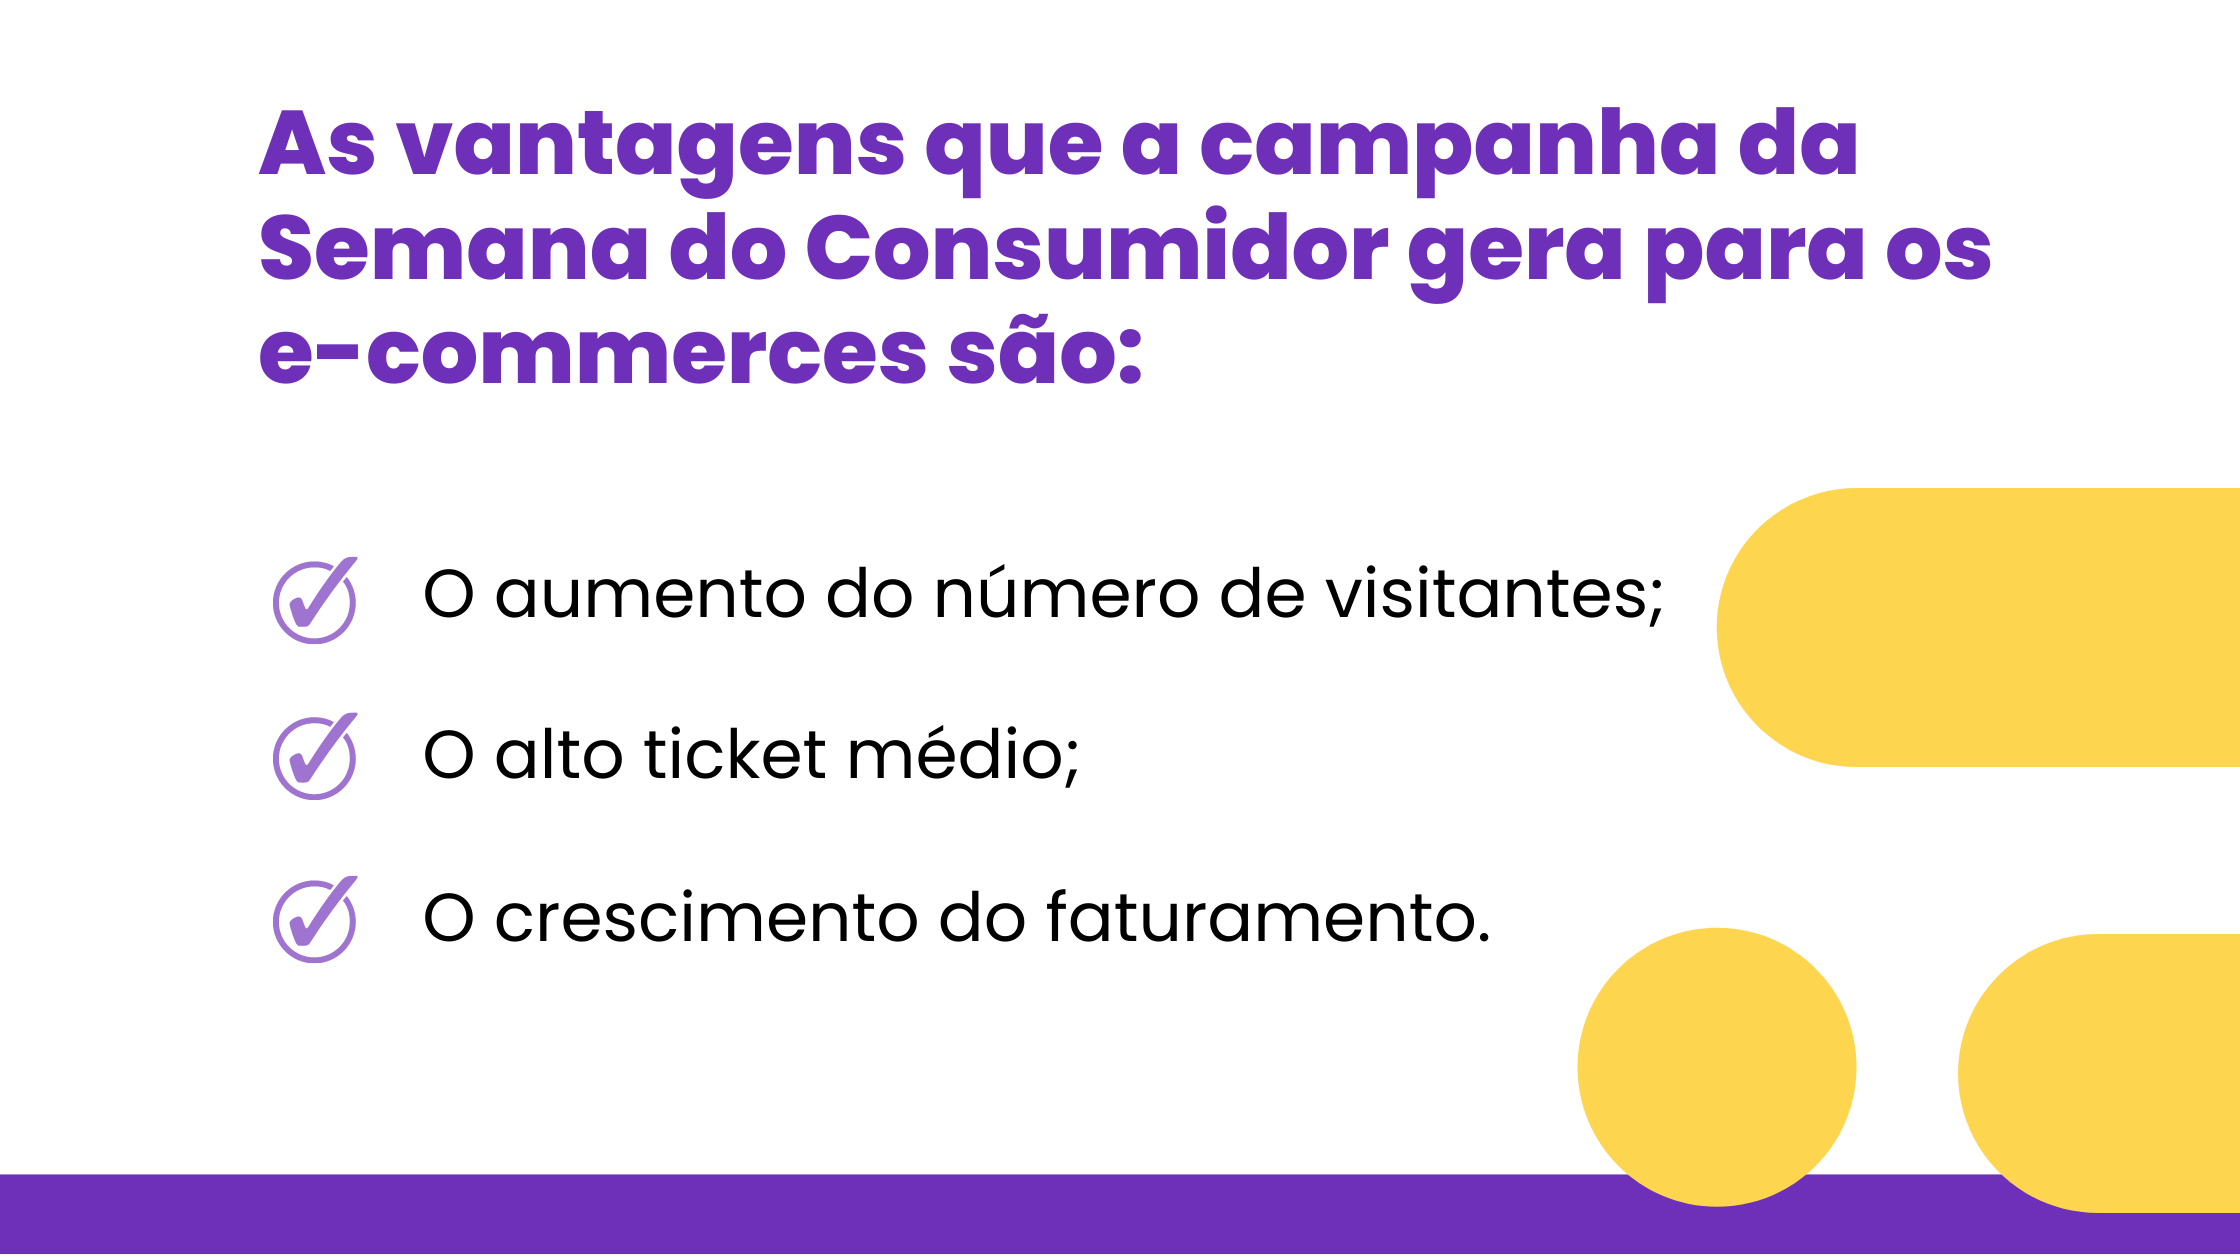 As vantagens que a campanha da Semana do Consumidor gera para os e-commerces são: O aumento do número de visitantes; O alto ticket médio; O crescimento do faturamento.